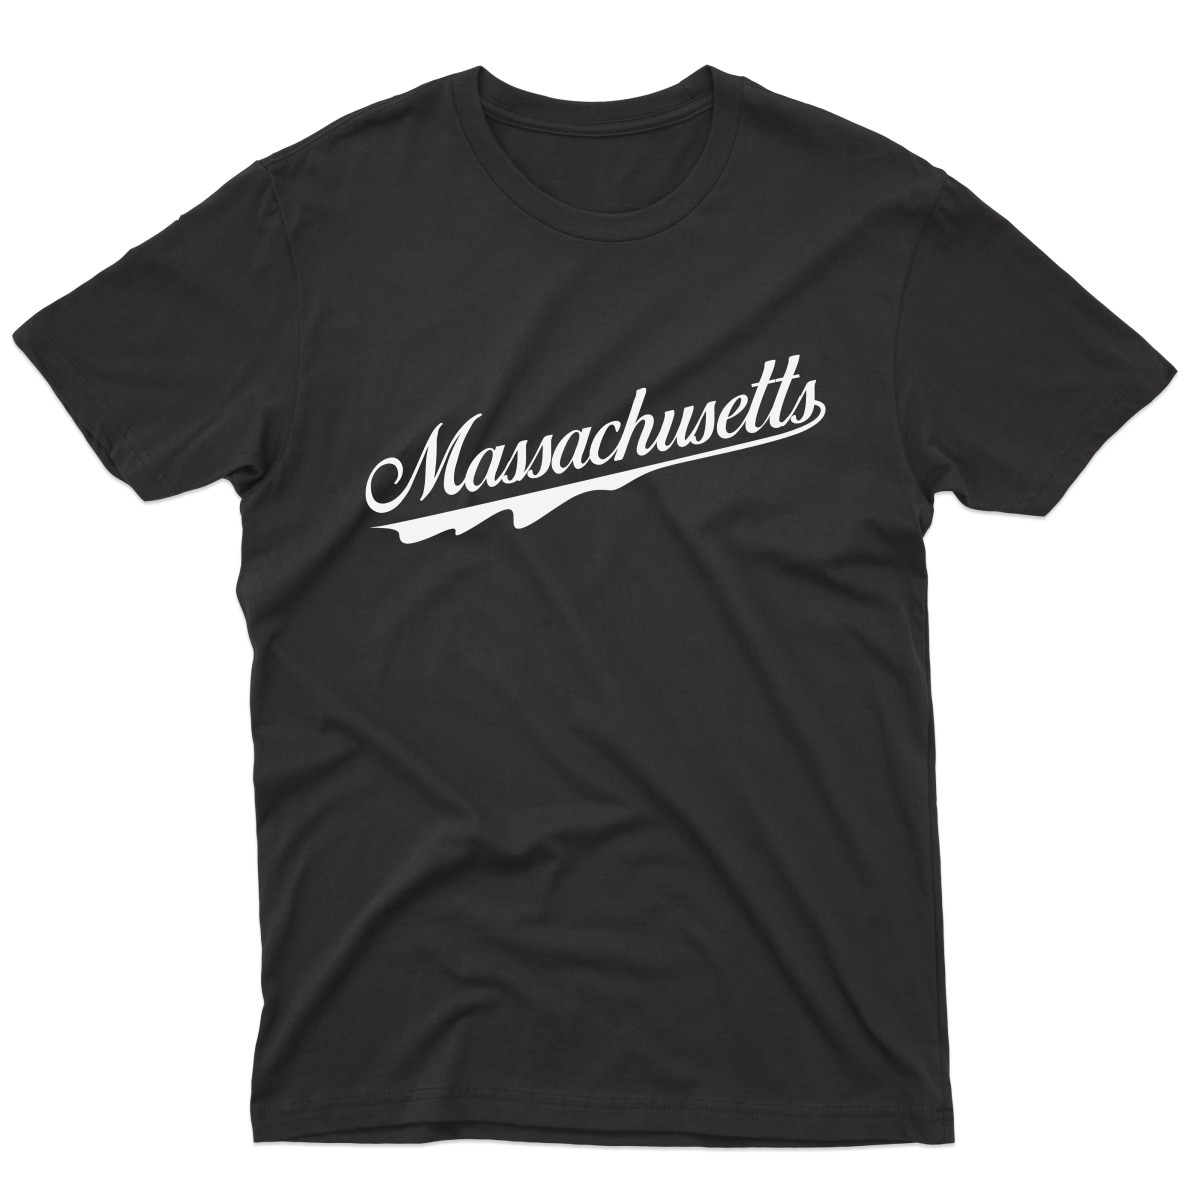 Massachusetts Men's T-shirt | Black